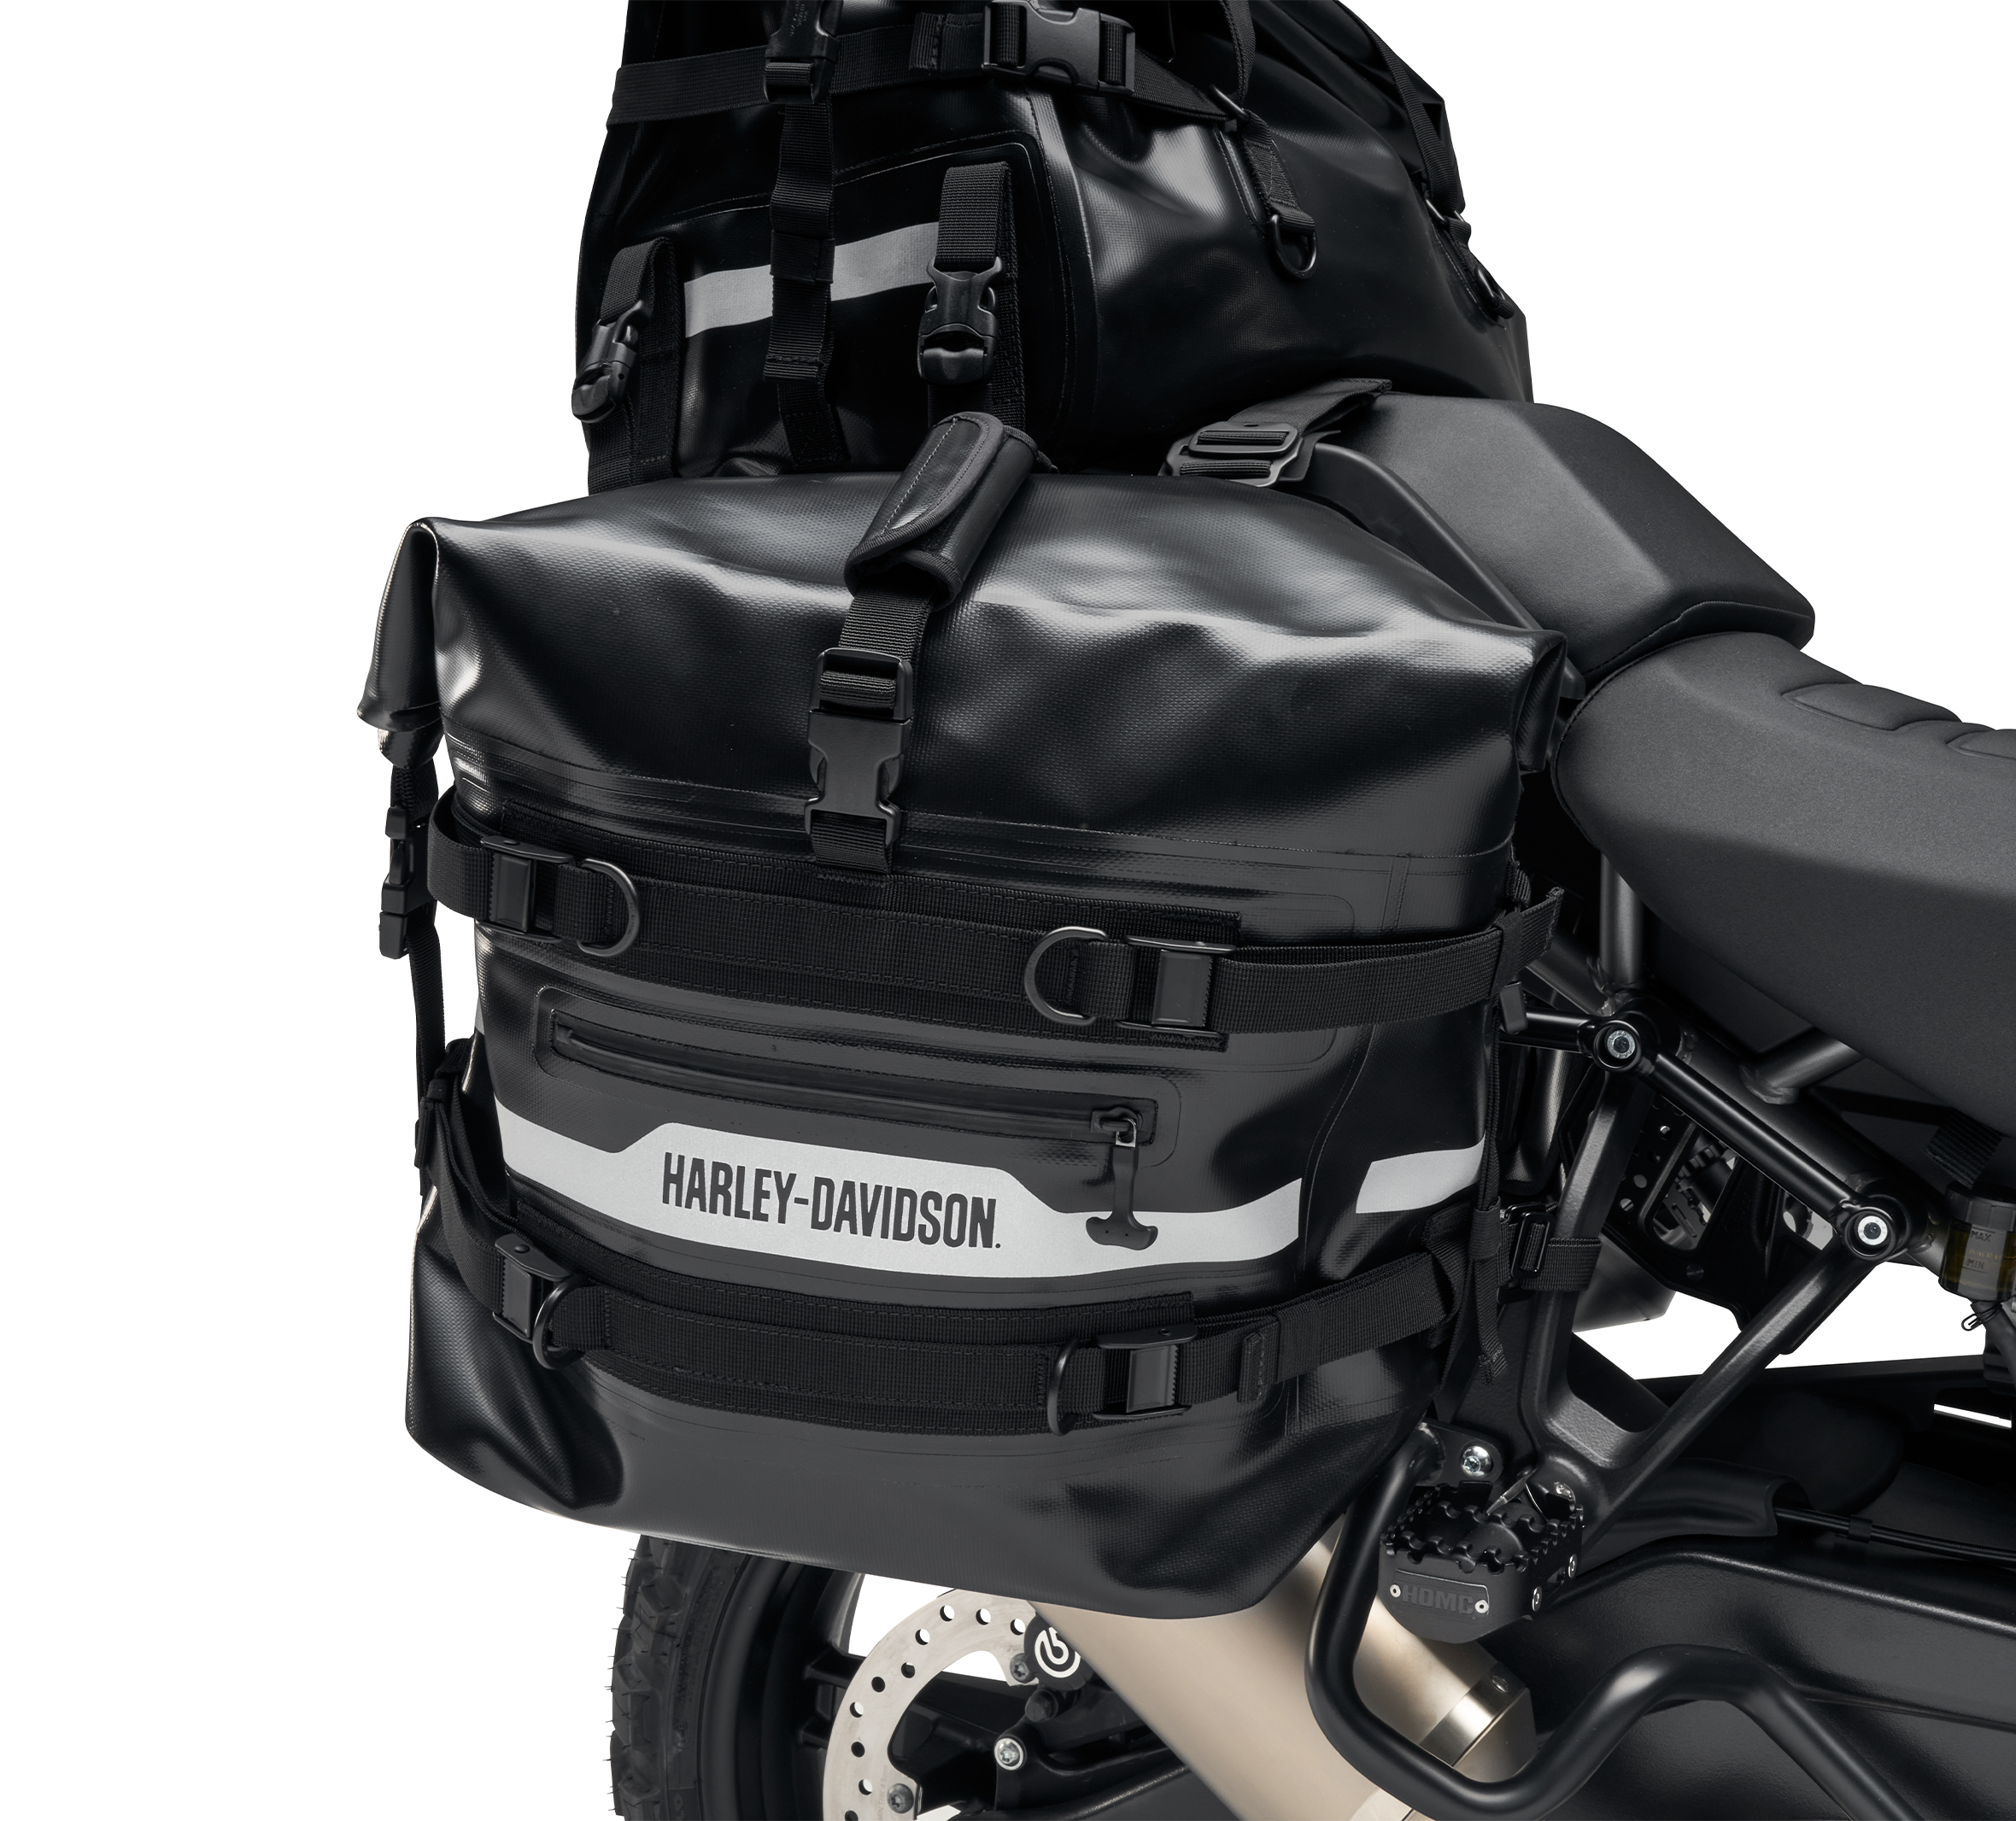 Harley-Davidson Motorcycle Shoulder Bags for Women